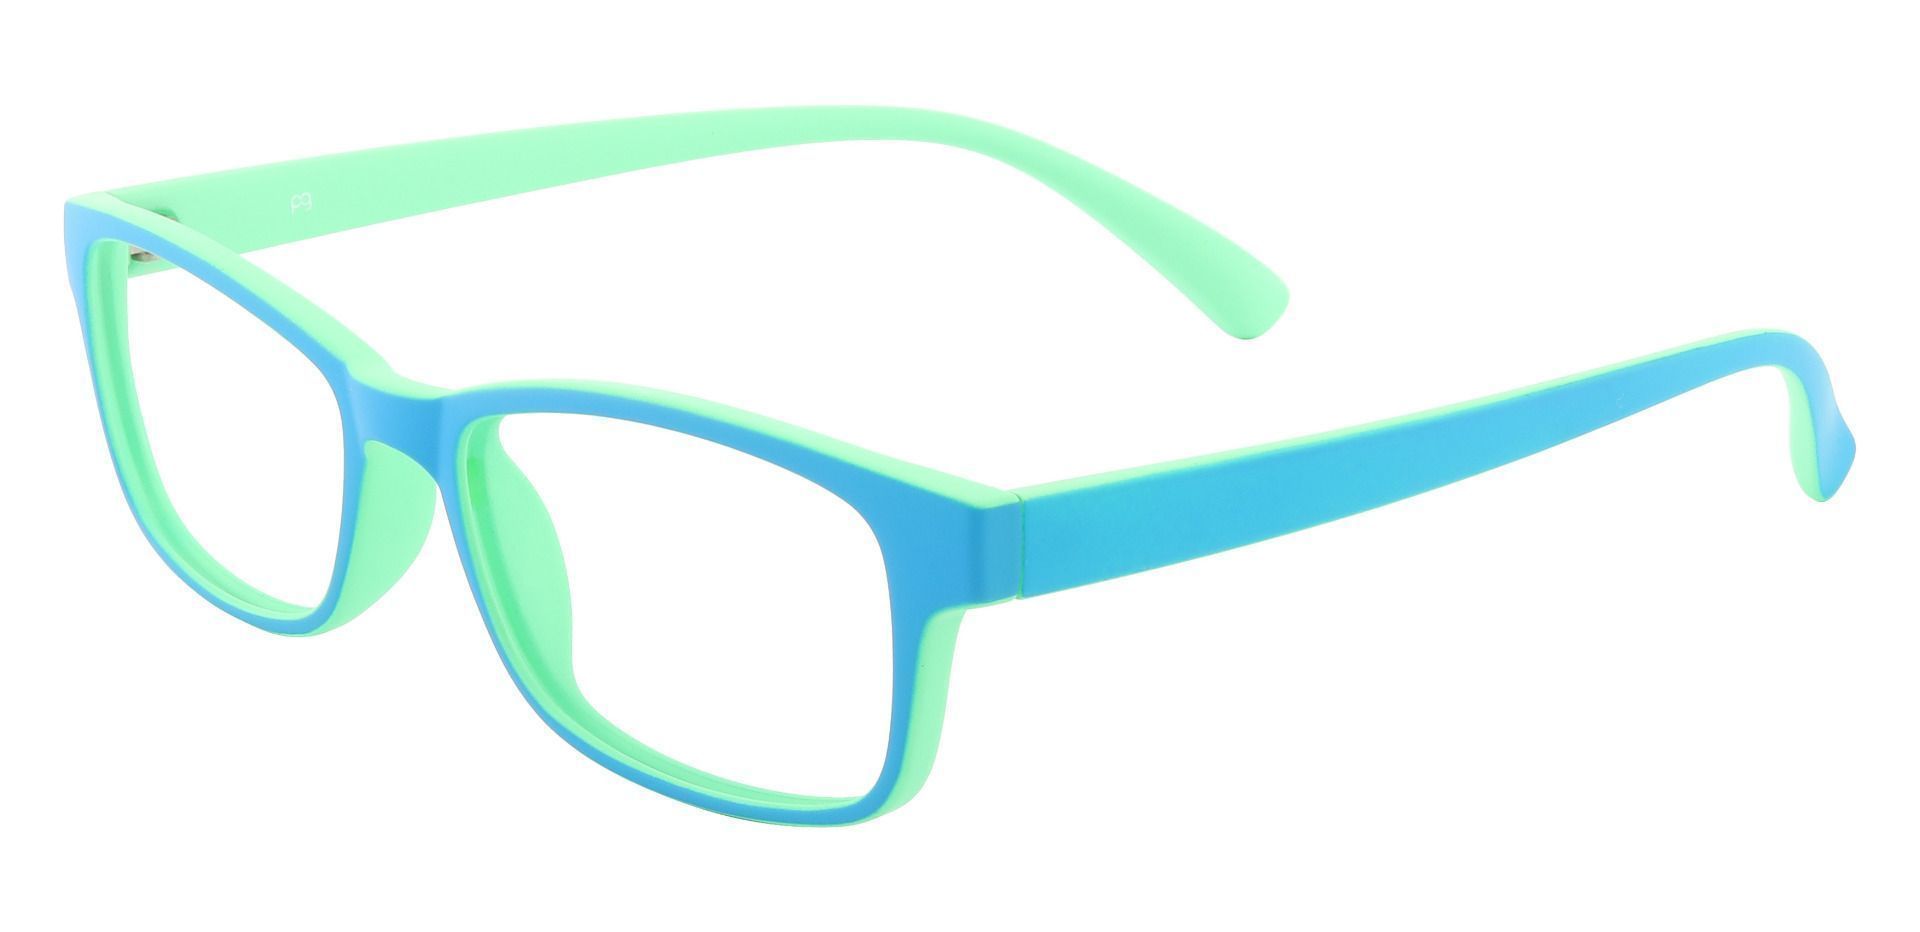 Cottage Rectangle Eyeglasses Frame - Blue